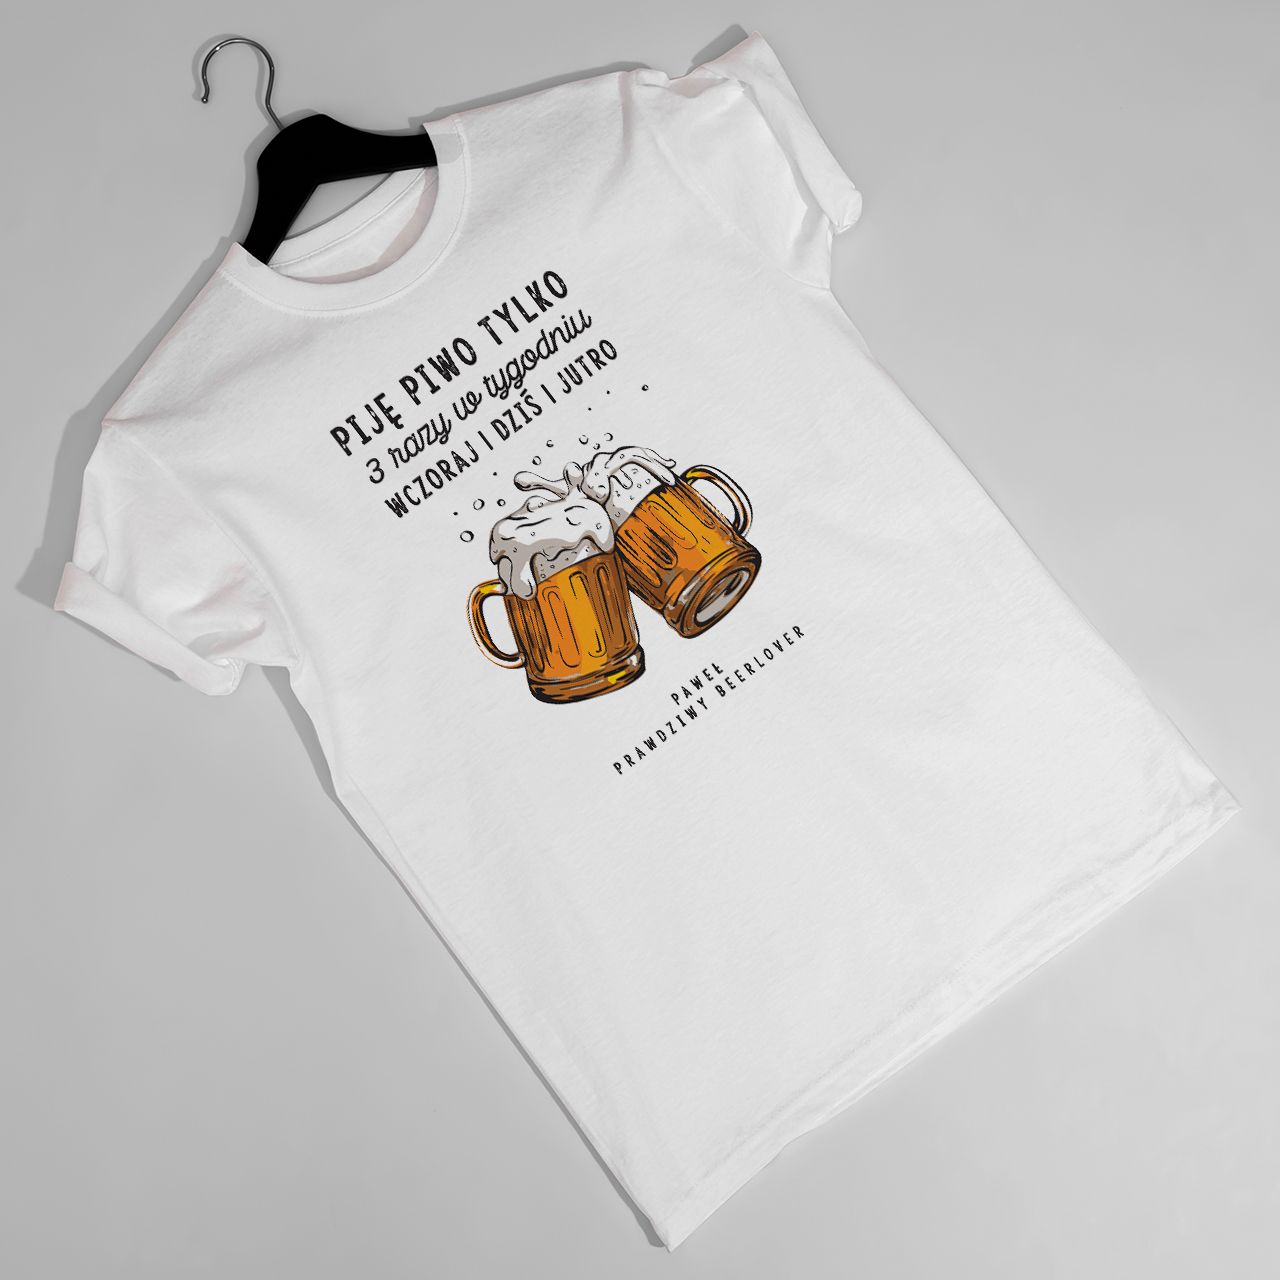 Koszulka męska z nadrukiem BEER LOVER śmieszna koszulka z piwem - XXL